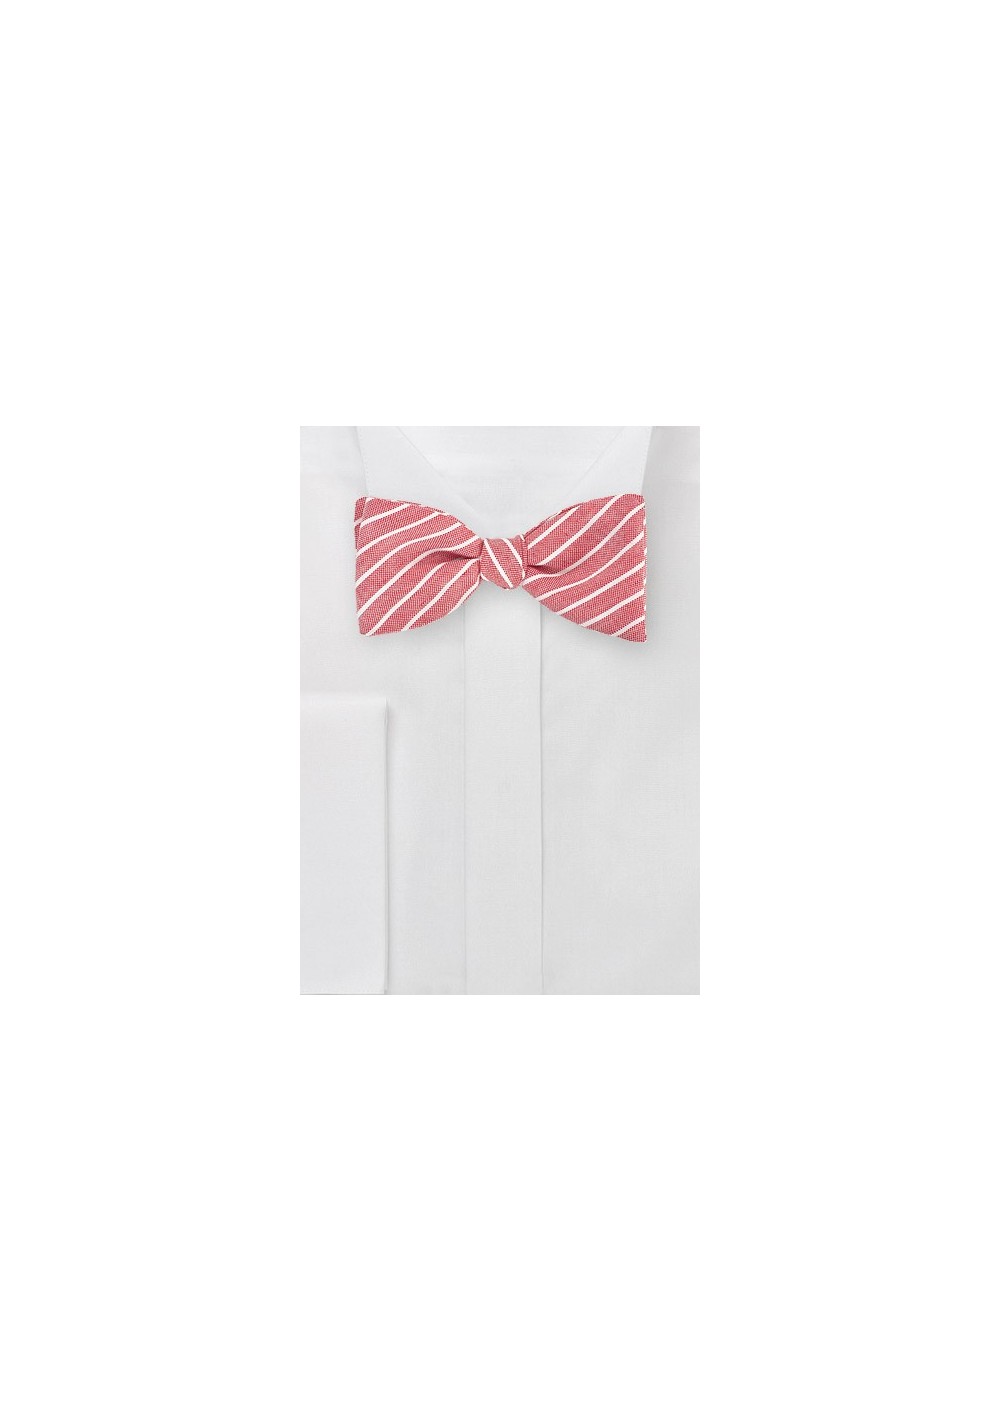 Red Linen Self Tie Bow Tie